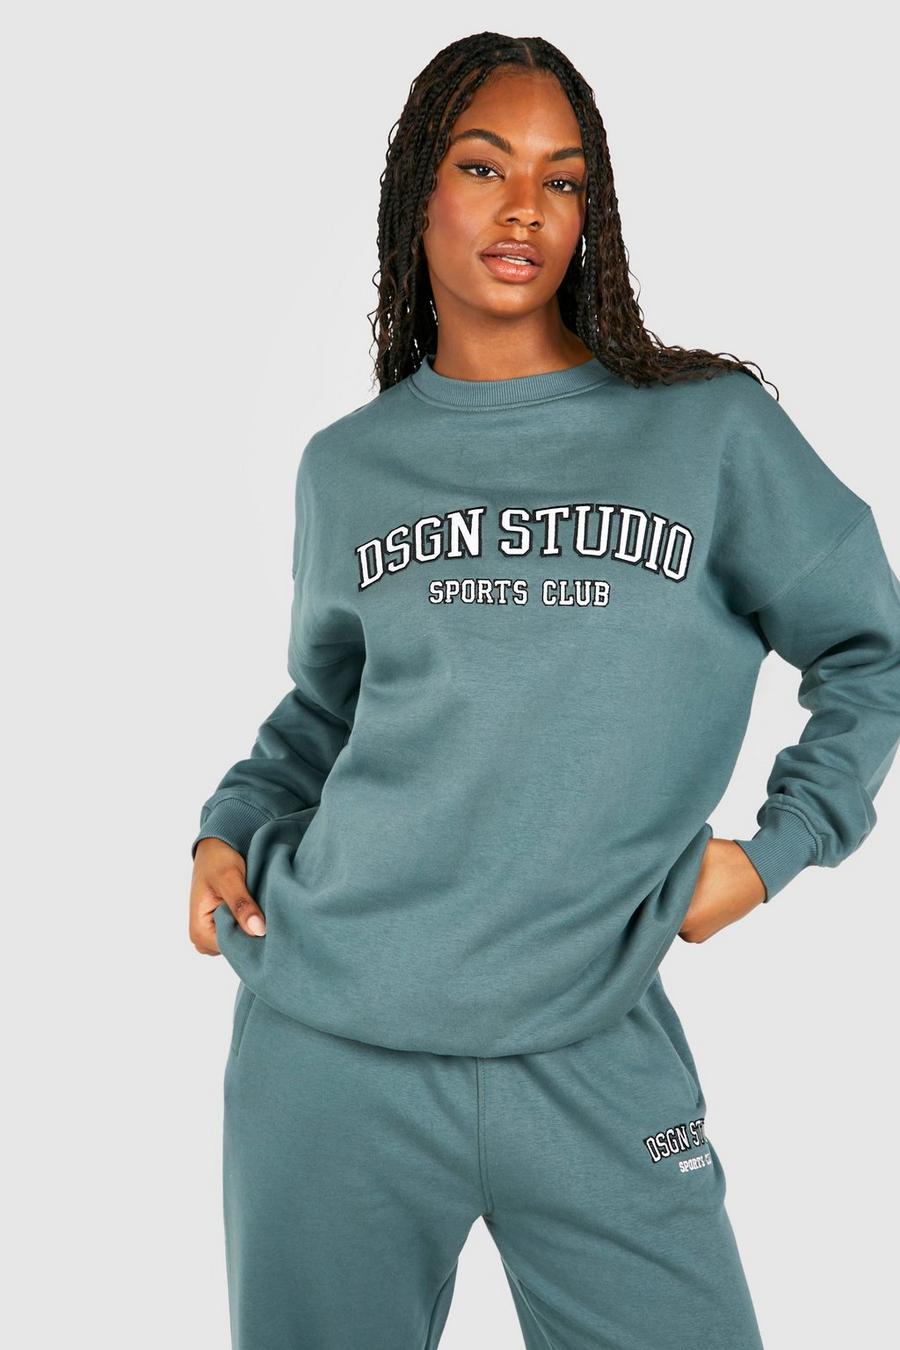 Tall Sweatshirt mit Dsgn Studio Applikation, Teal